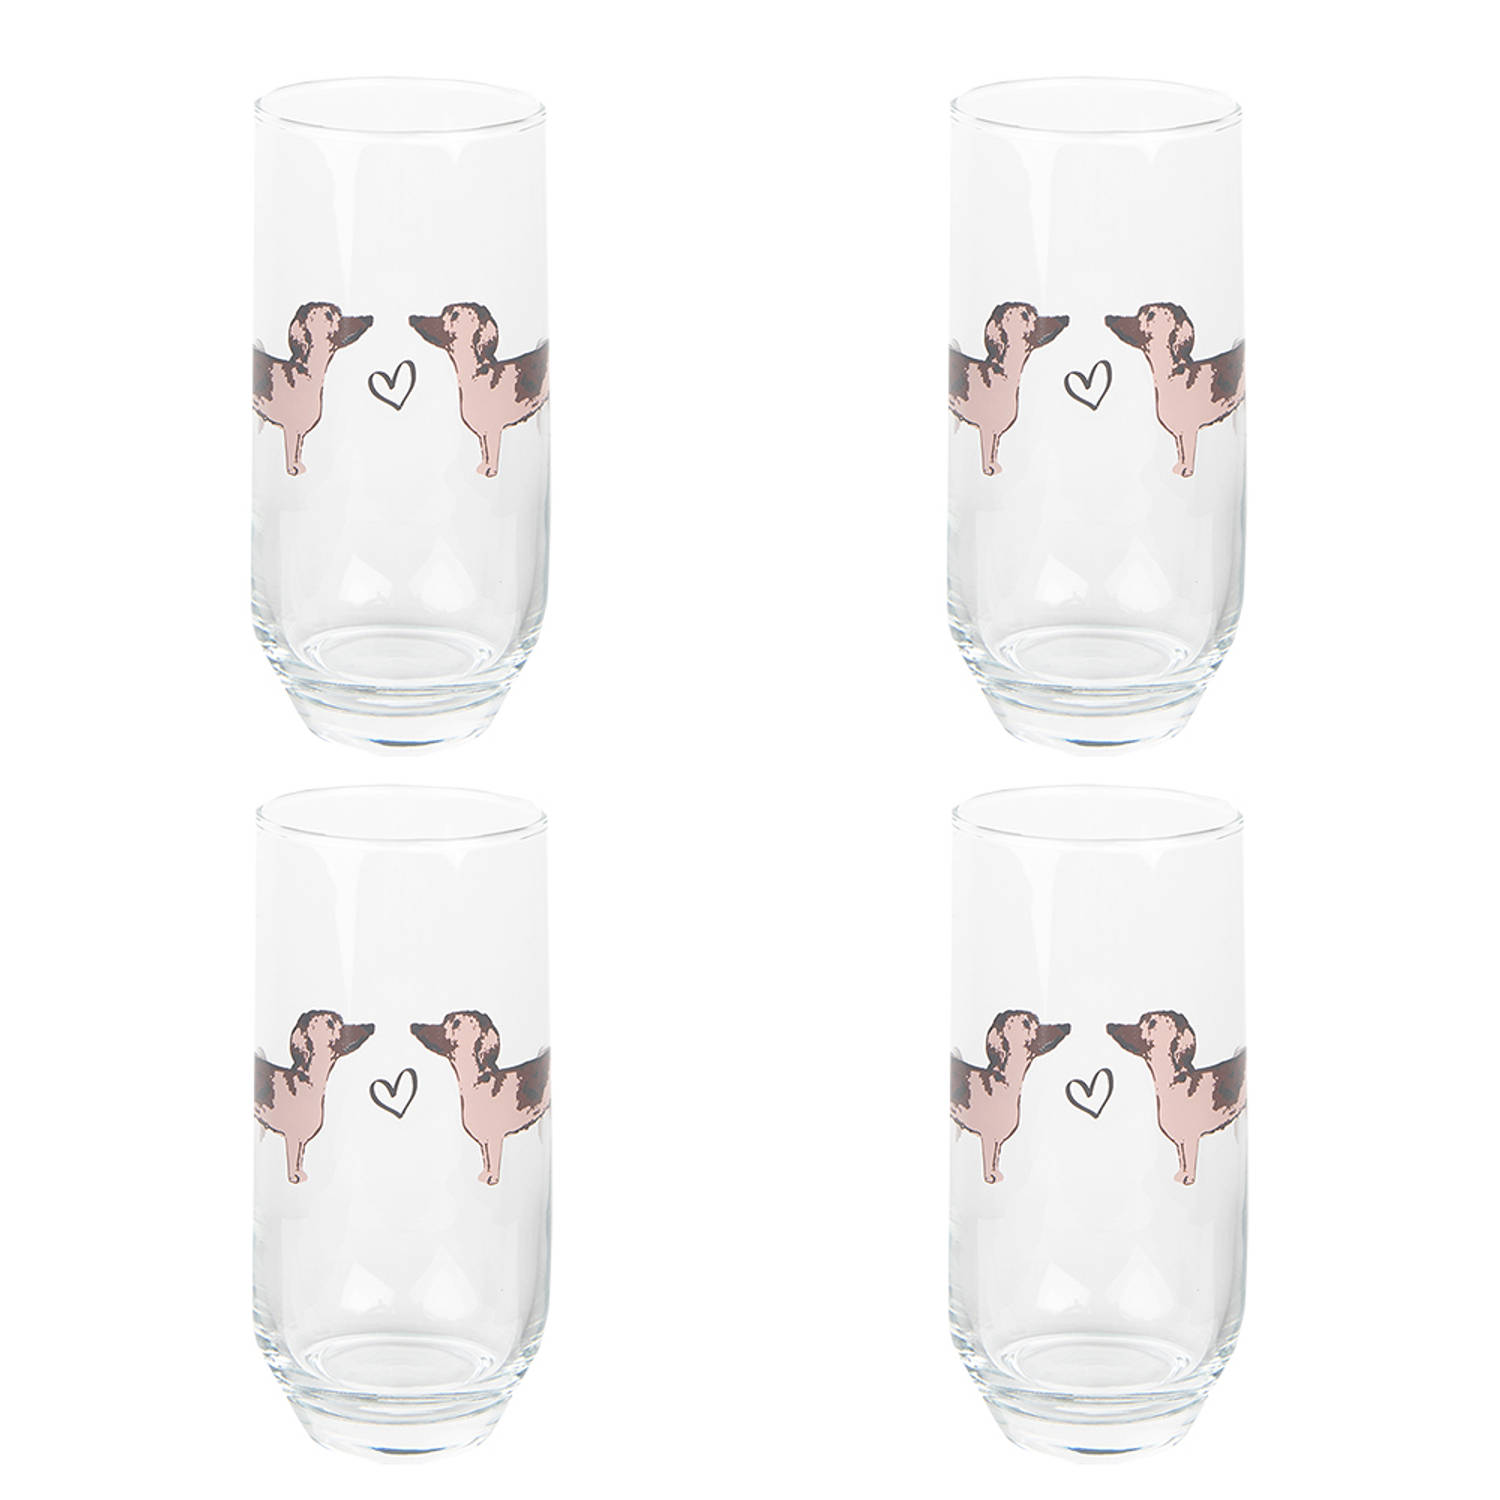 HAES DECO - Waterglas, Drinkglas set van 4 glazen - inhoud glas 380 ml - formaat glas Ø 7x14 cm - Collectie: Dachshund Love - Waterglazen, Drinkglazen